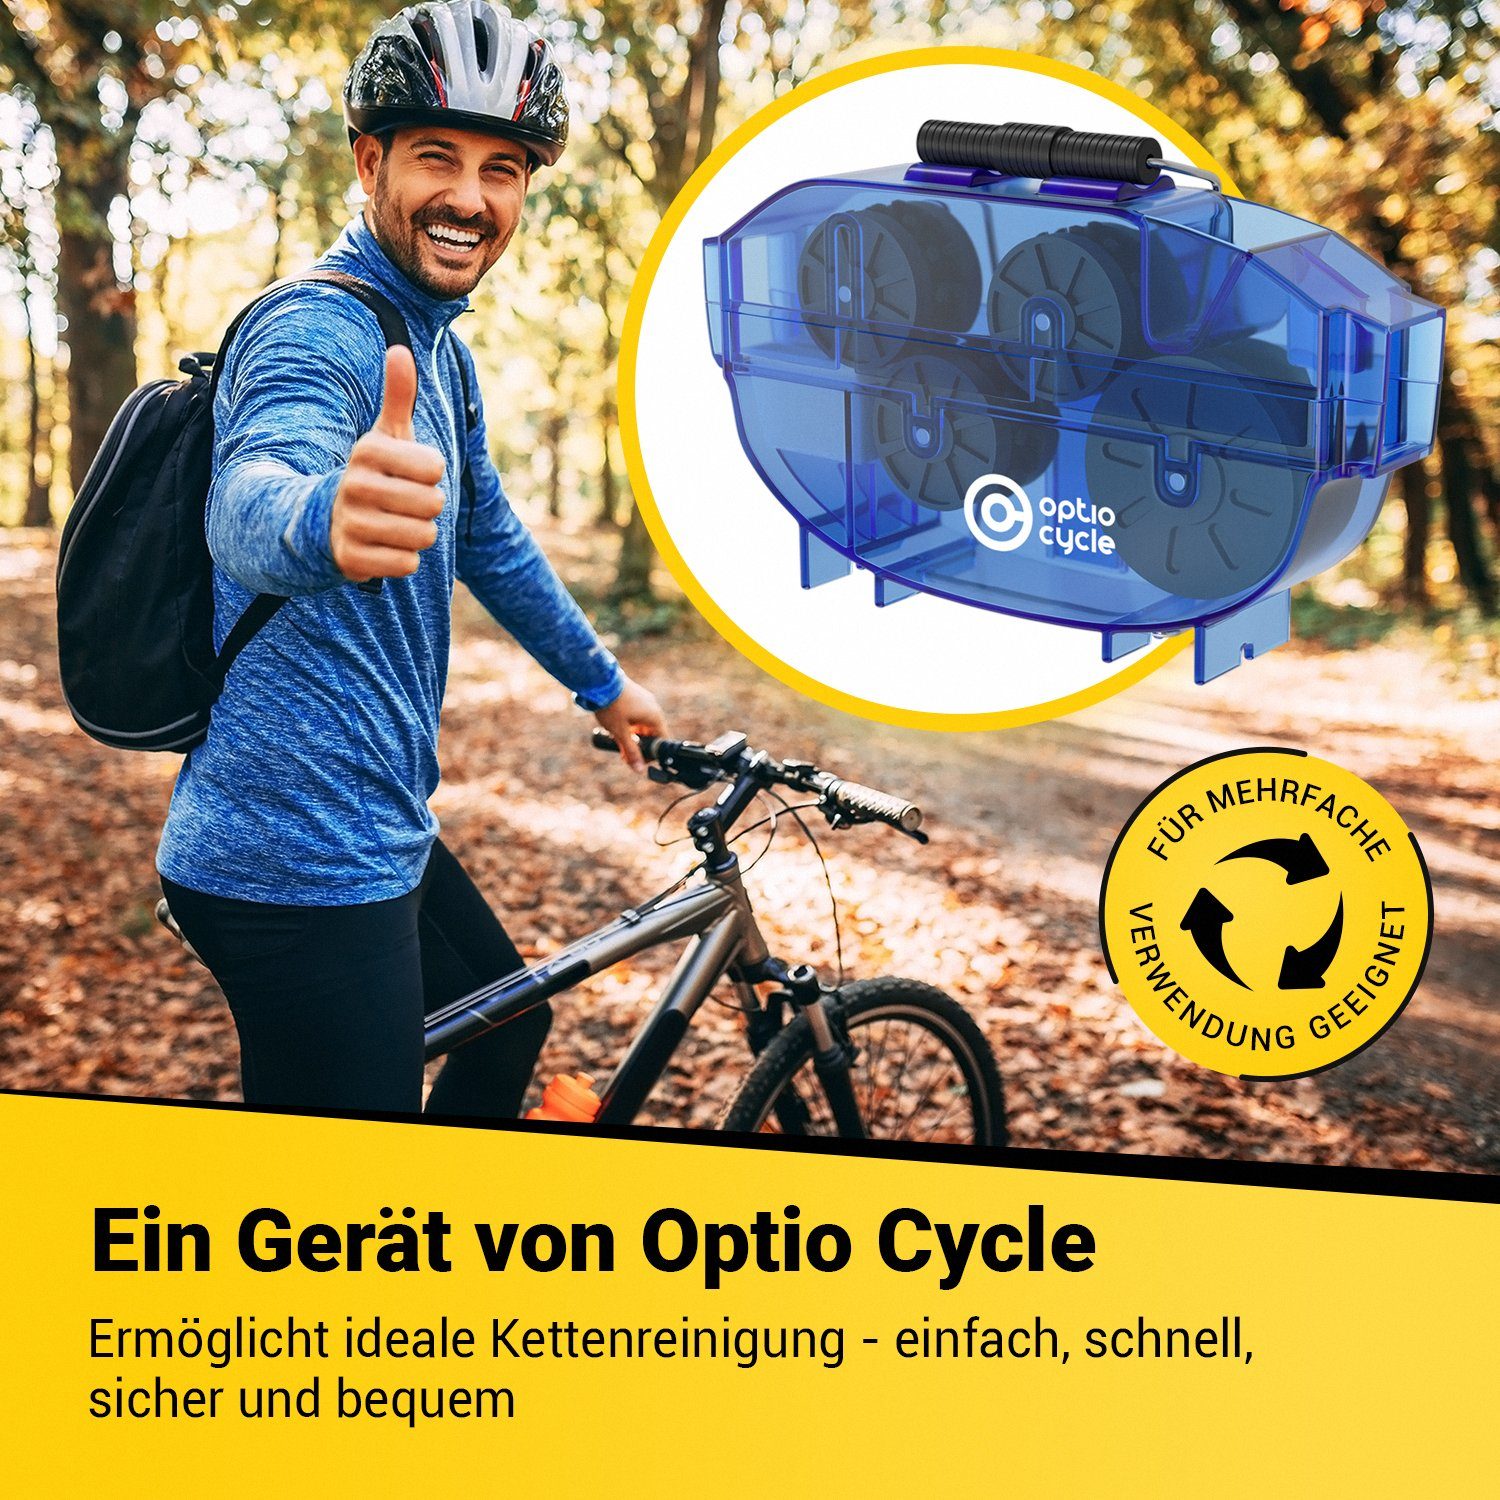 Optio Cylce Fahrradketten Kettenreinigungsgerät Fahrrad, Fahrradkette Kettenreiniger